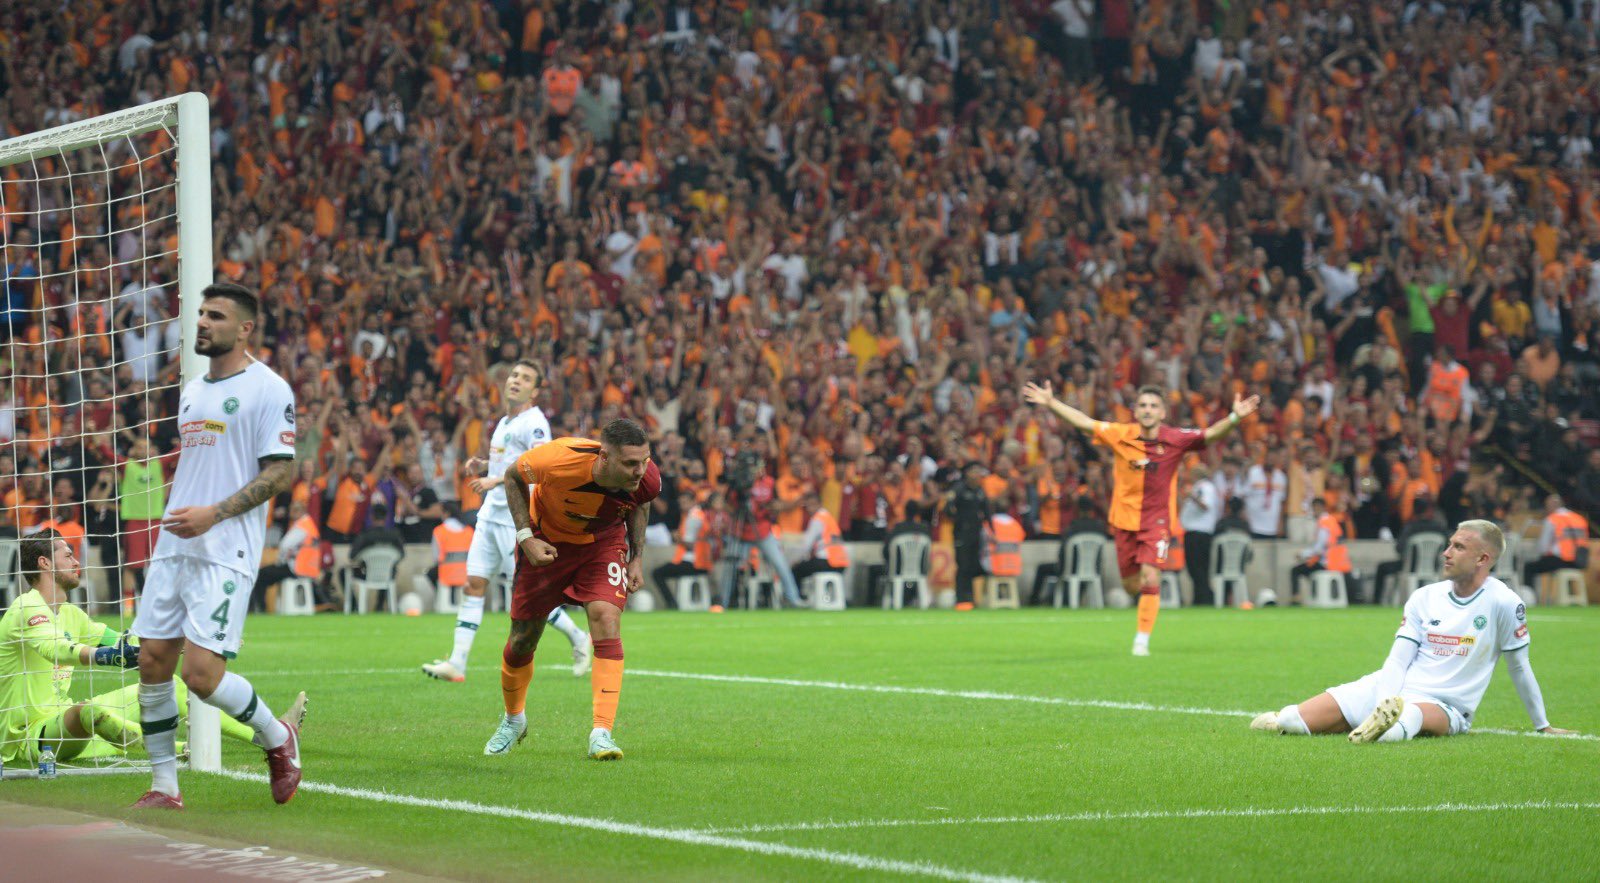 Show de Mauro Icardi en su debut con Galatasaray: fue clave en el gol del triunfo e hizo expulsar al arquero rival en una pelea